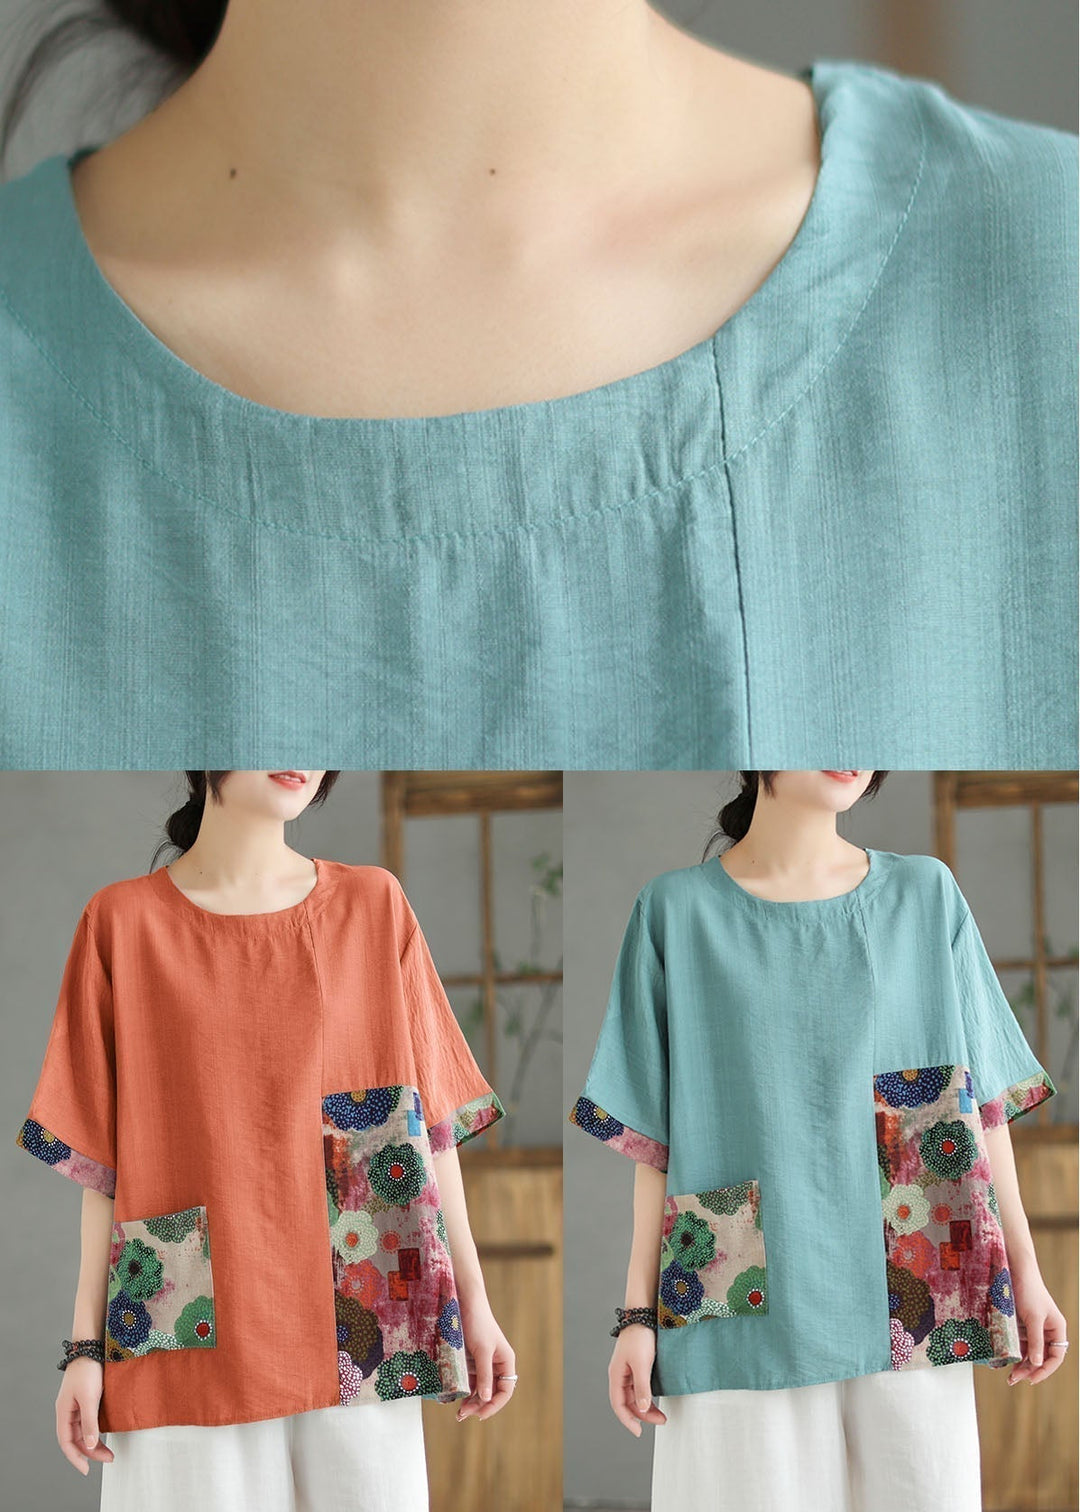 Women Print4  O Neck Print Patchwork Linen T Shirt Top Summer